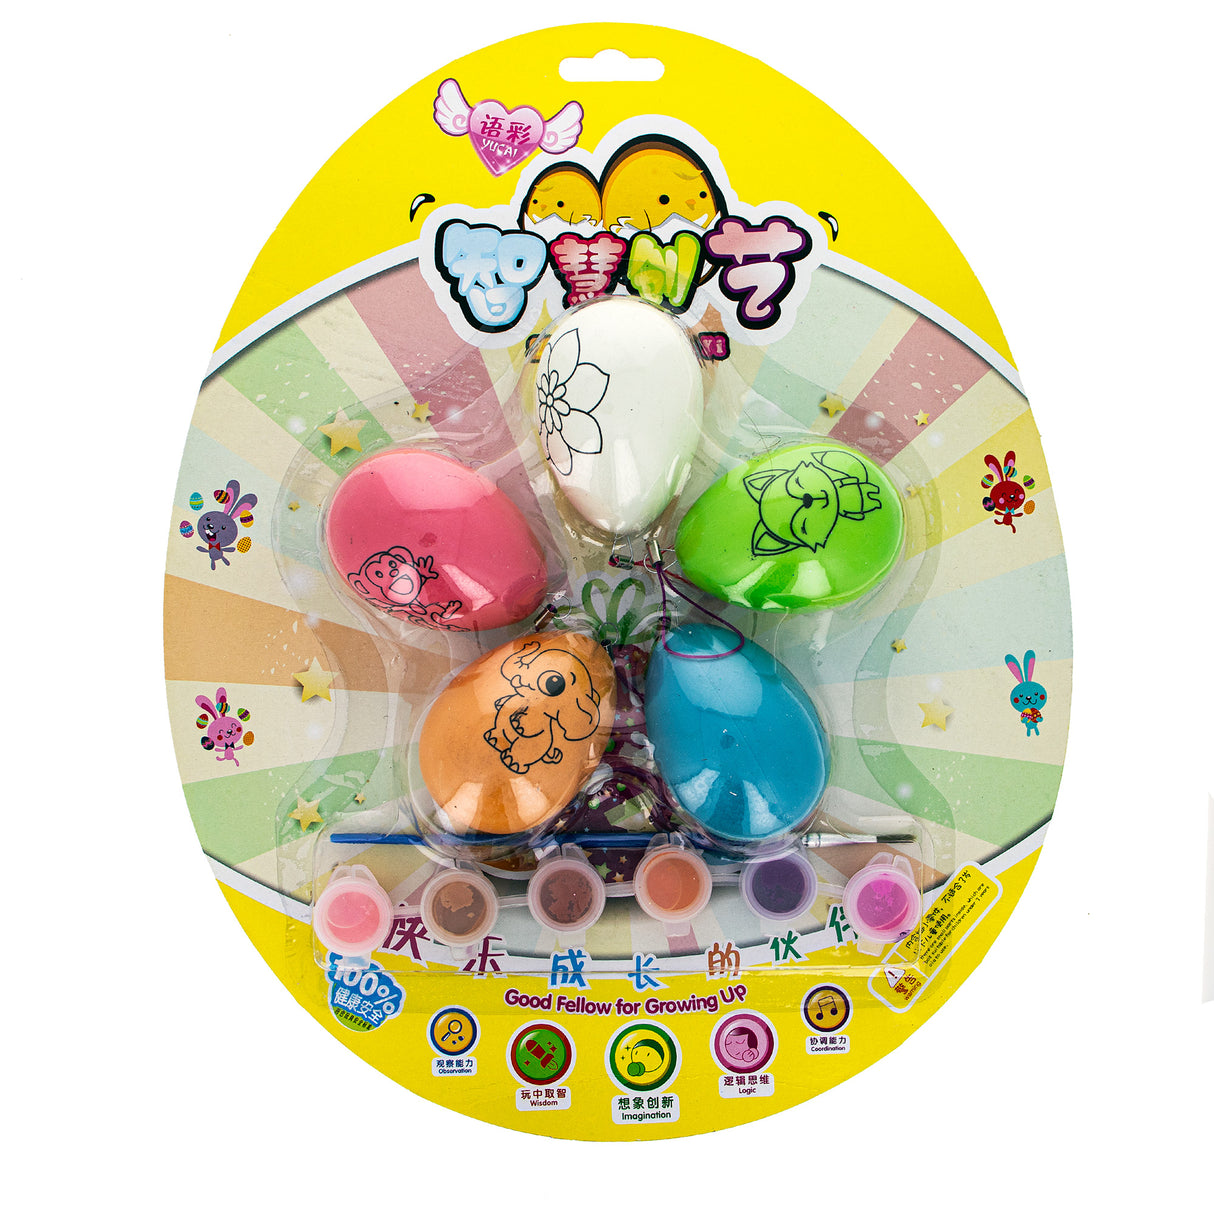 BestPysanky online gift shop sells egg ornaments, plastic eggs, easter eggs bulk, Easter decor, plastic eggs easter, egg hunt, Easter decorations, decorative